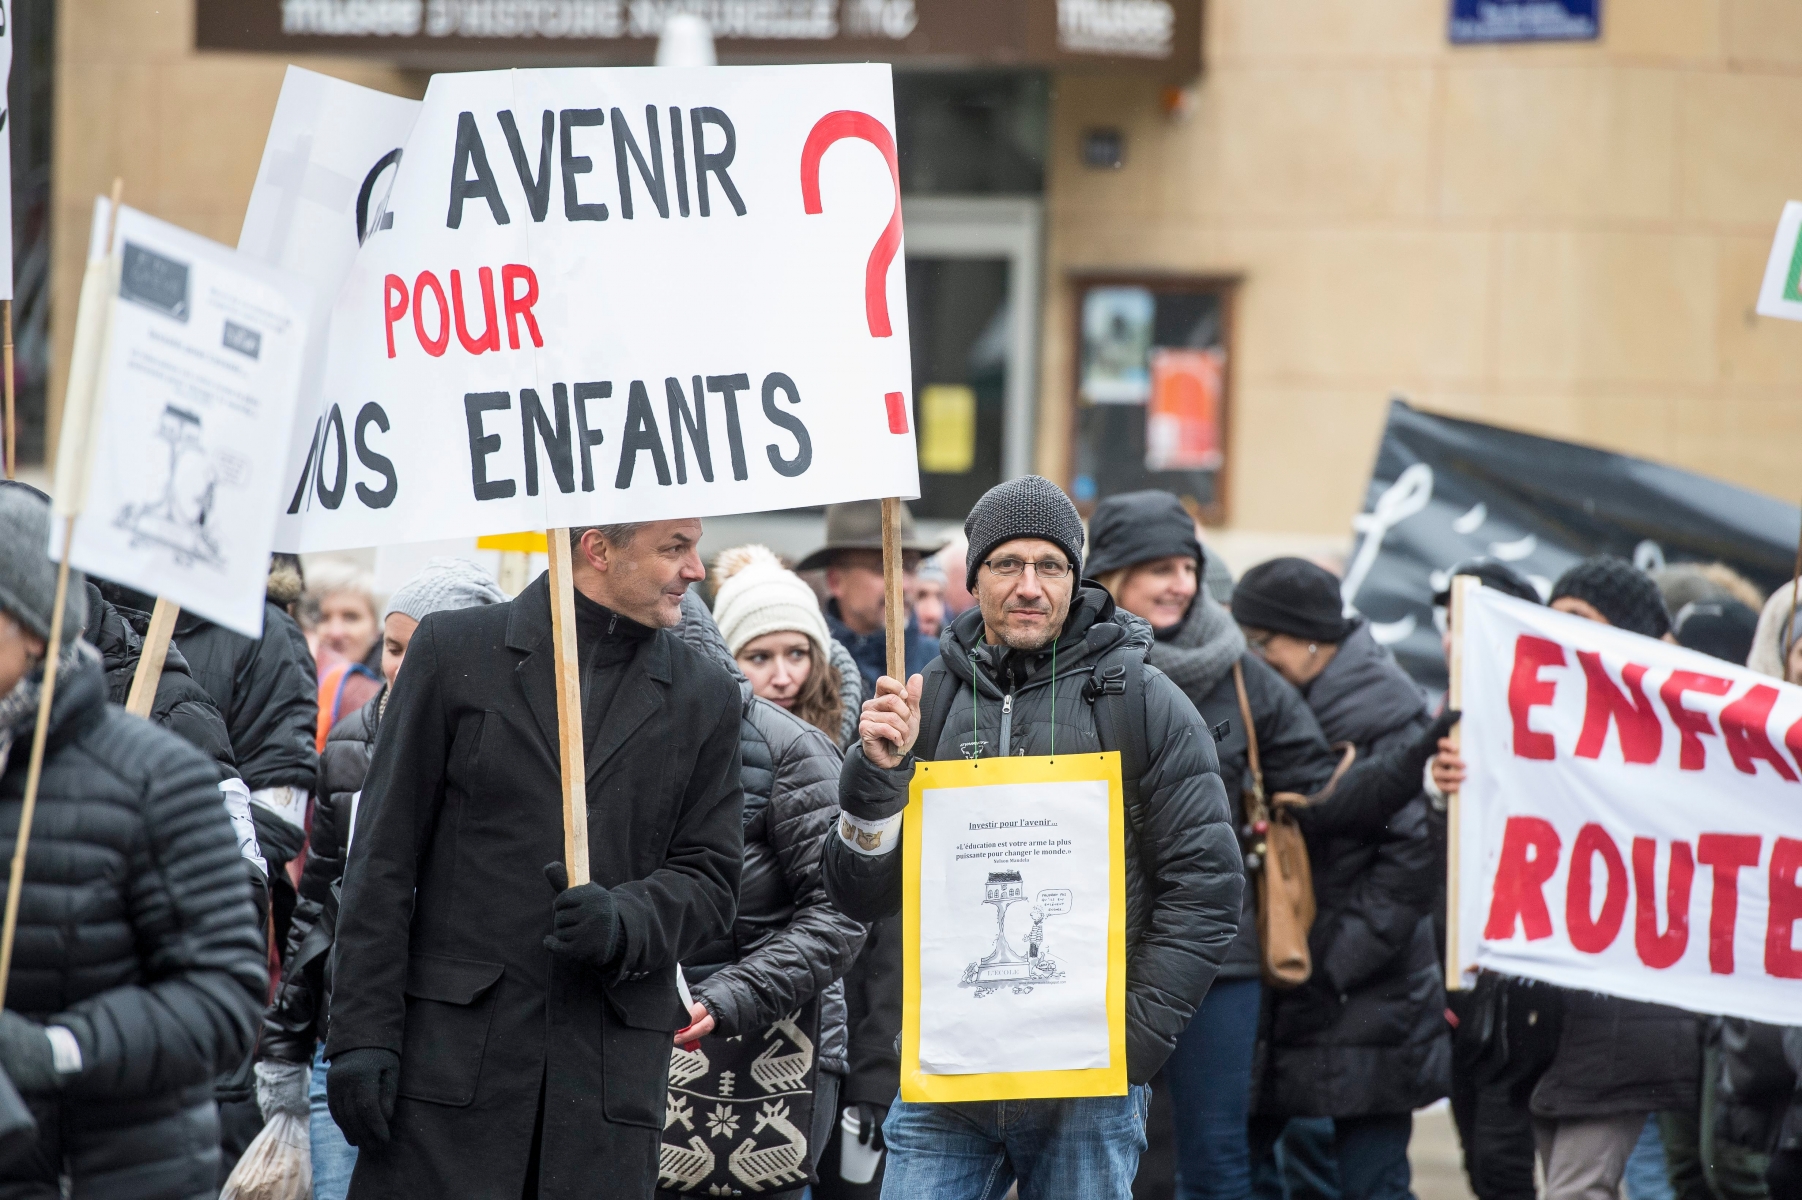 Manifestation des enseignants a La Chaux-de-Fonds

La Chaux-de-Fonds, le 8 novembre2016
Photo: Lucas Vuitel ENSEIGNANTS